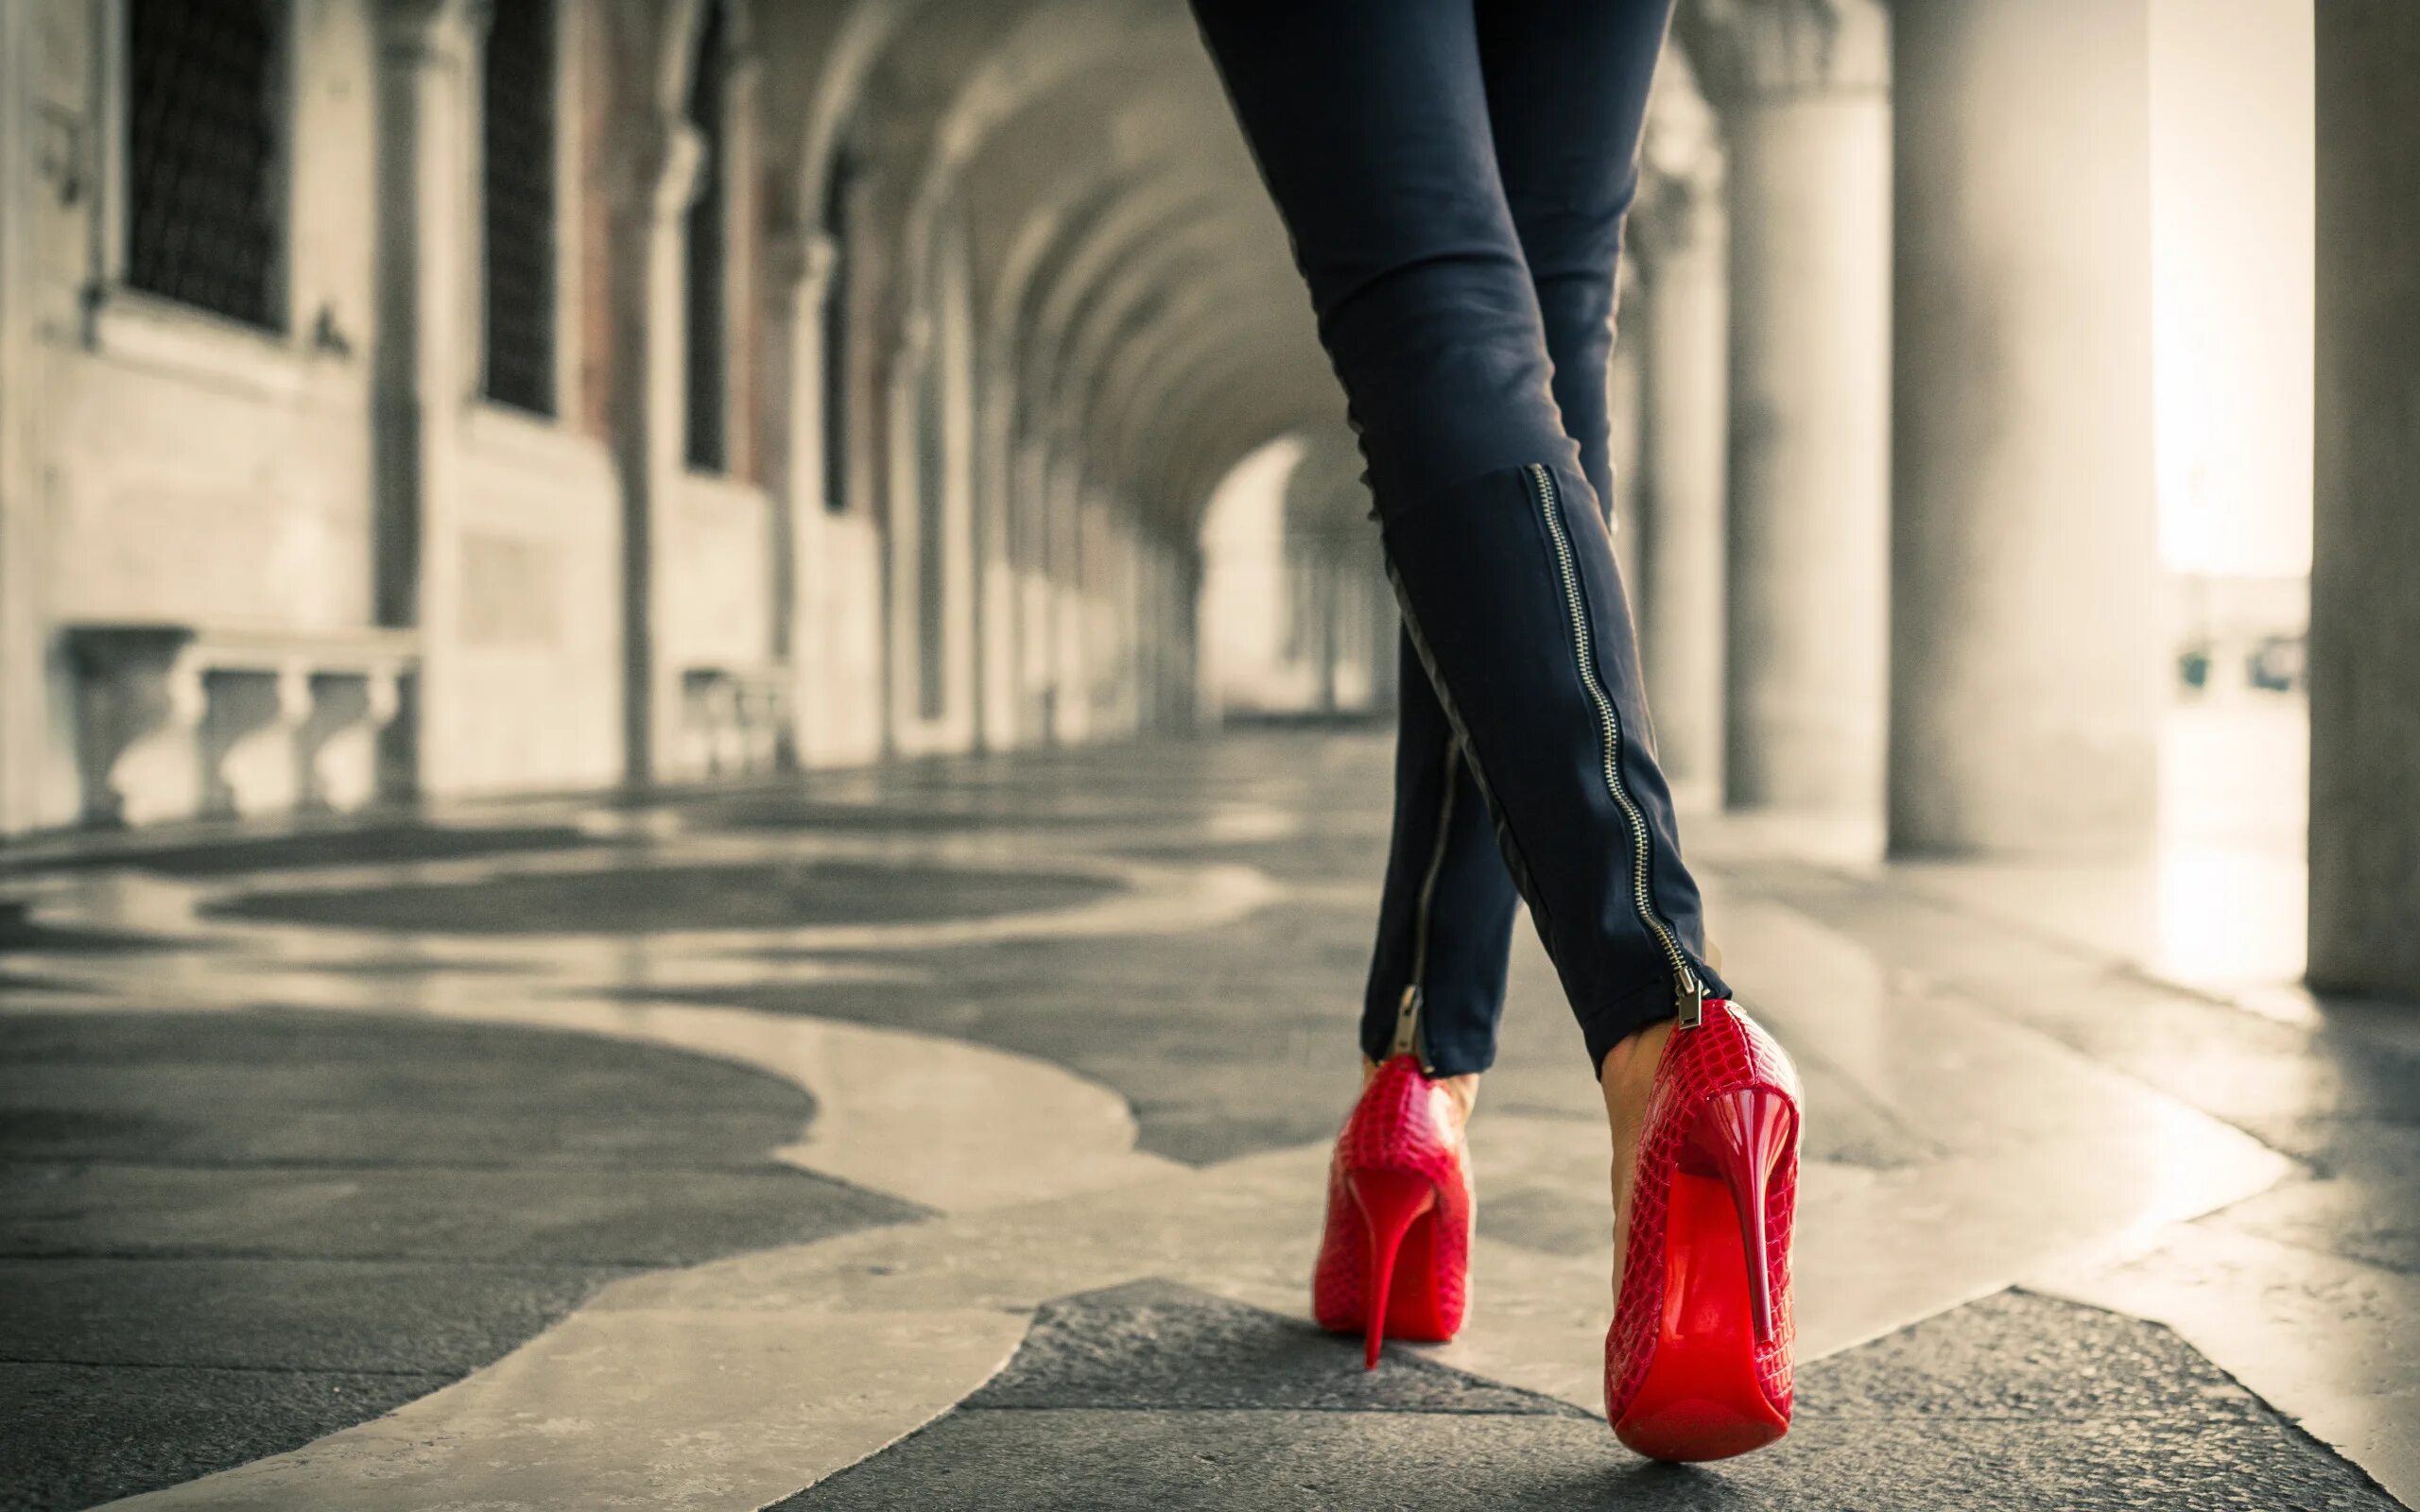 Hot high heels. Девушка в красных туфлях на каблуке. Красивые каблуки. Ноги в туфлях на высоких каблуках. Красные туфли на шпильке.